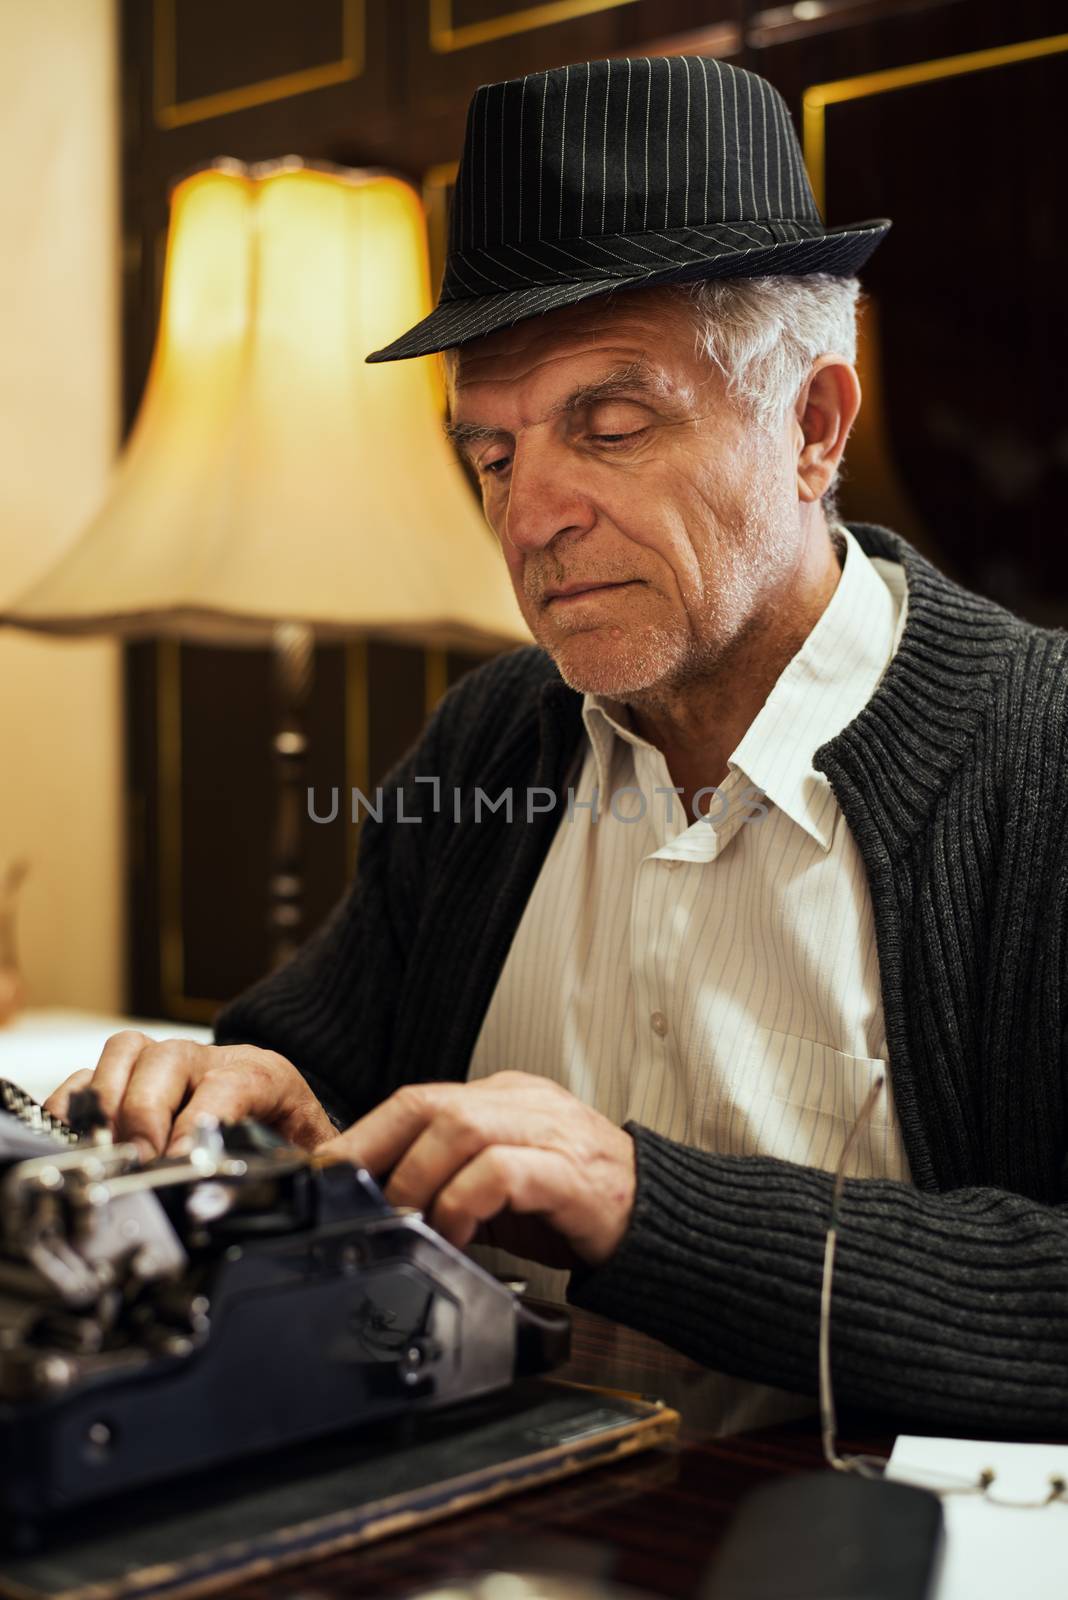 Retro Senior man writer with hat, writing on Obsolete Typewriter.